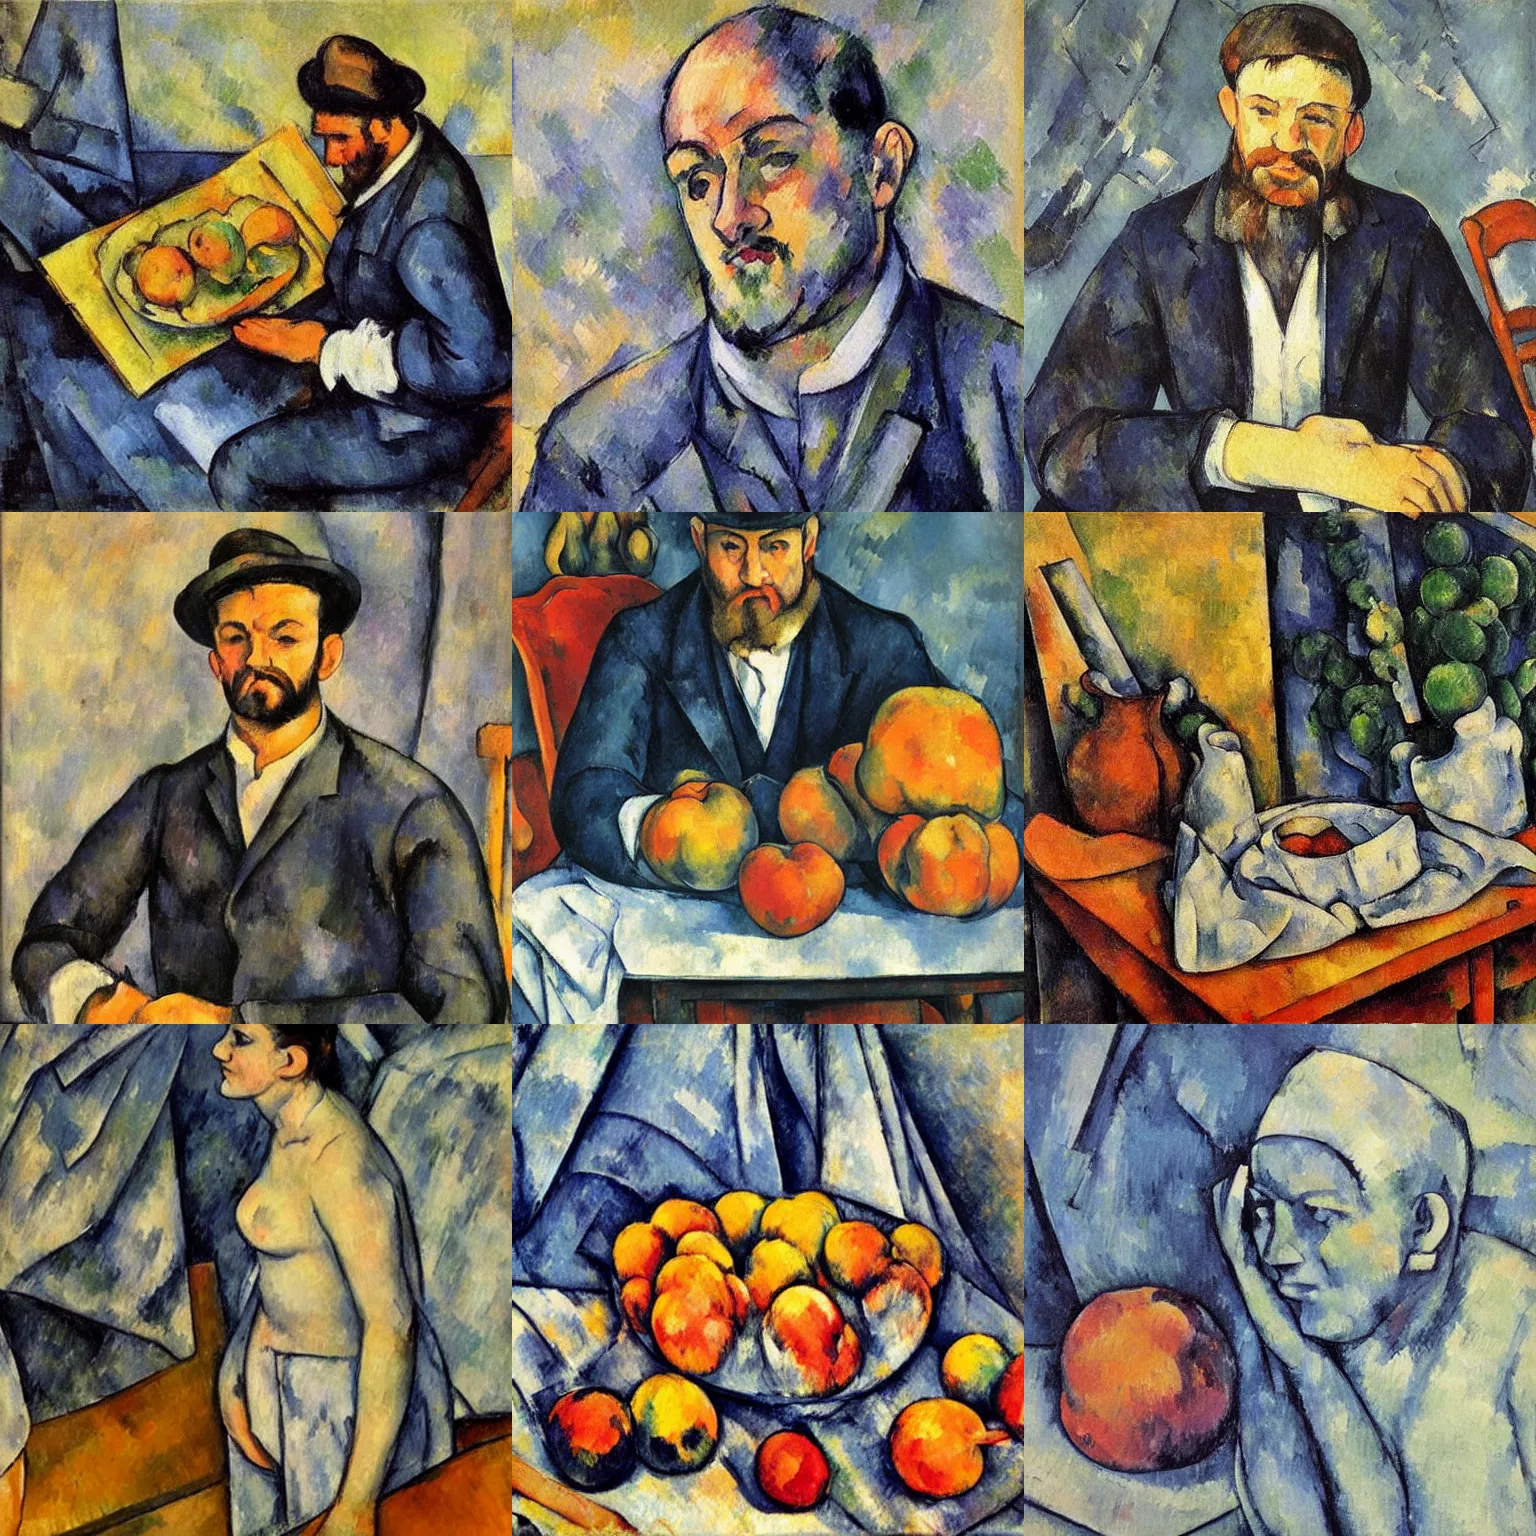 Prompt: Art by Paul Cezanne